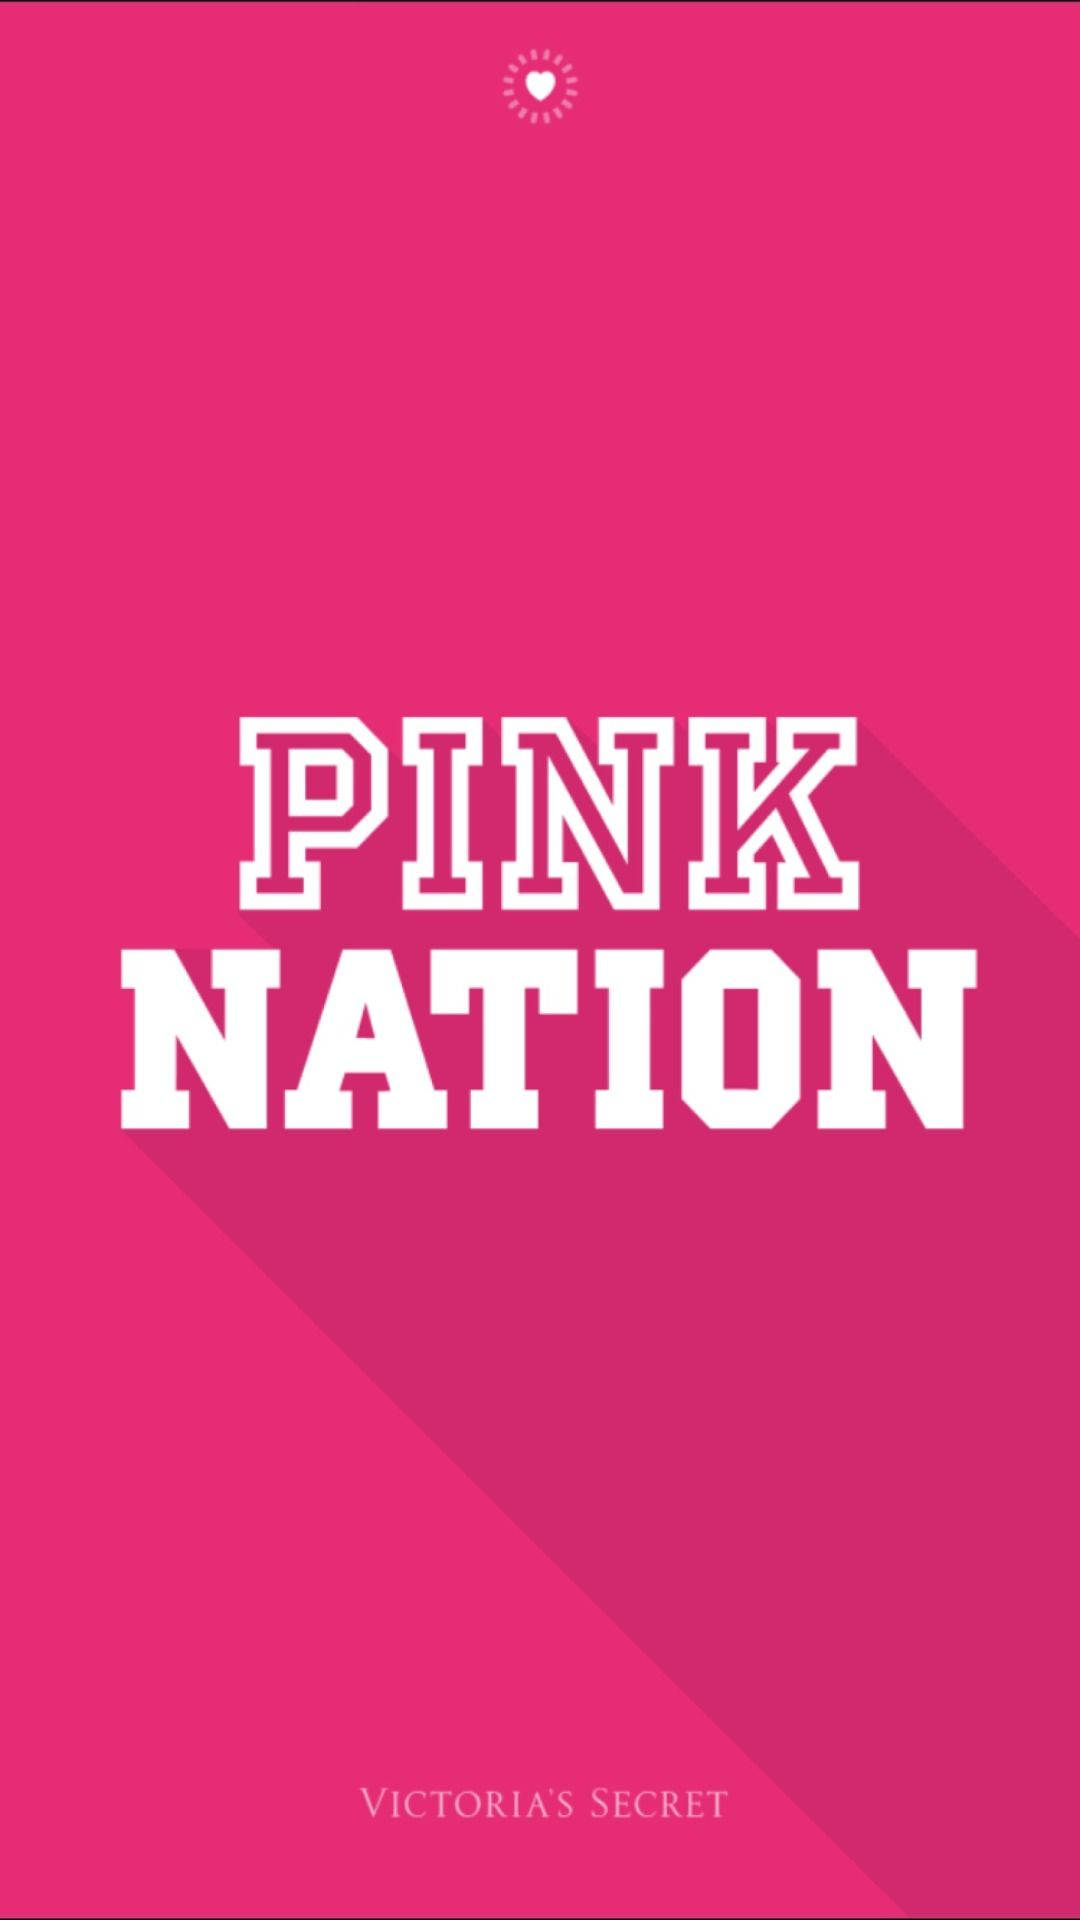 Secret Pink Nation Wallpaper